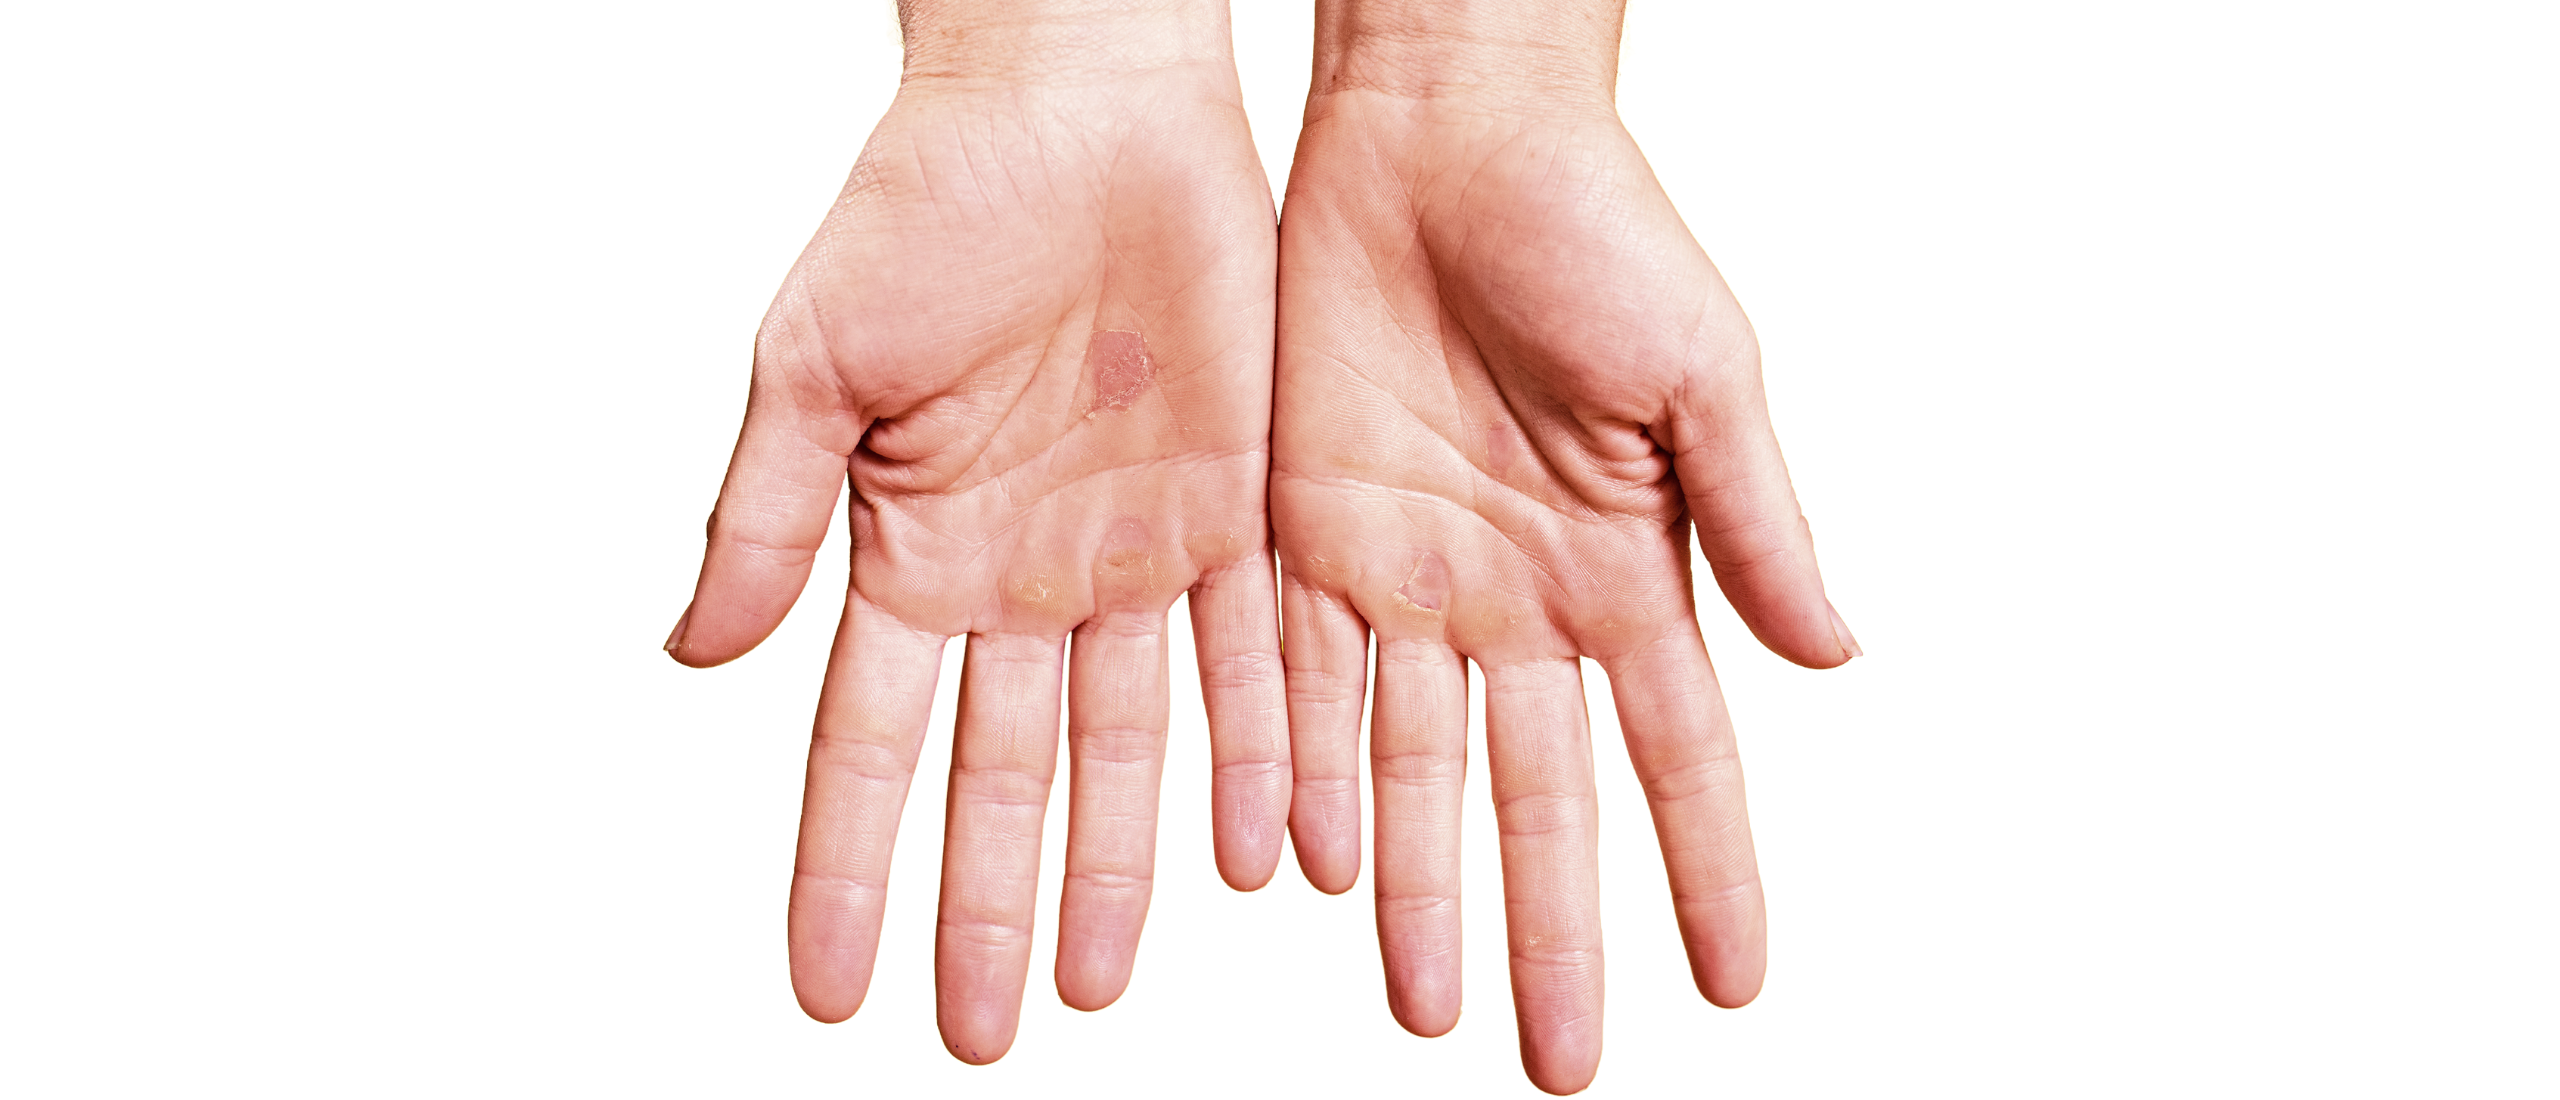 Eelt op hand: ruwe en harde handpalmen